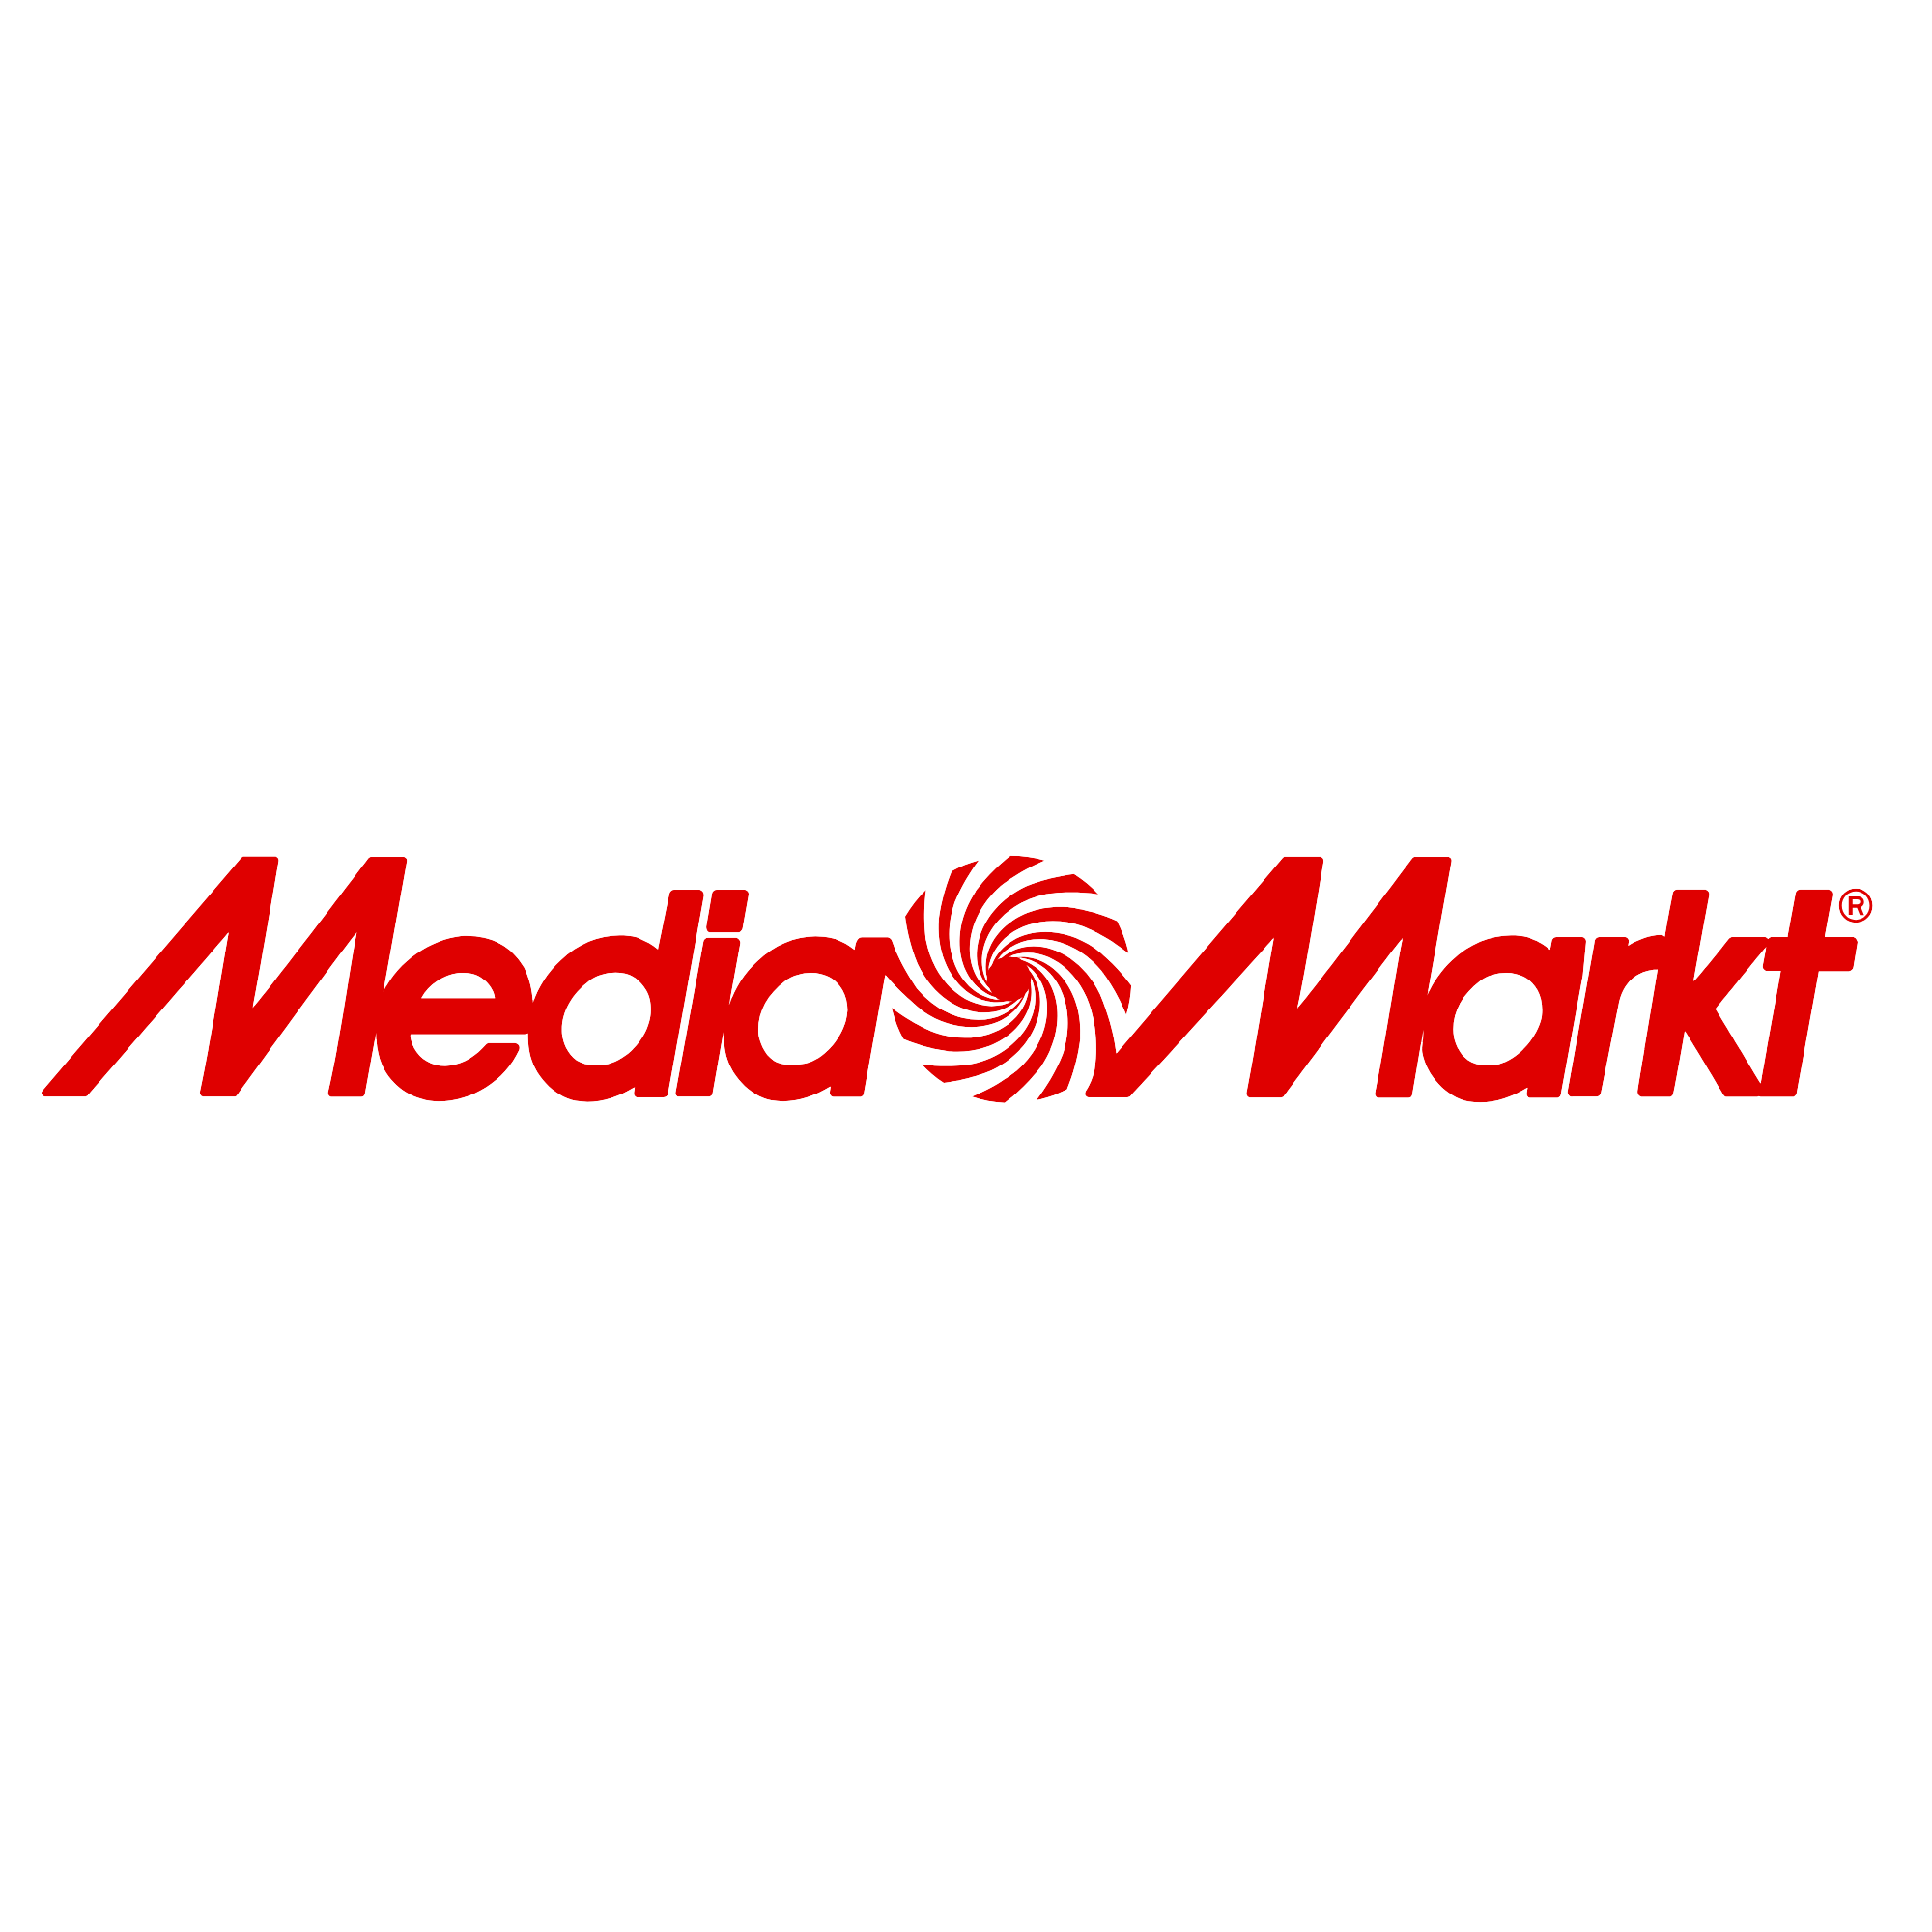 Reportero profundidad A merced de El Gran Renove con las mejores ofertas | MediaMarkt | MediaMarkt